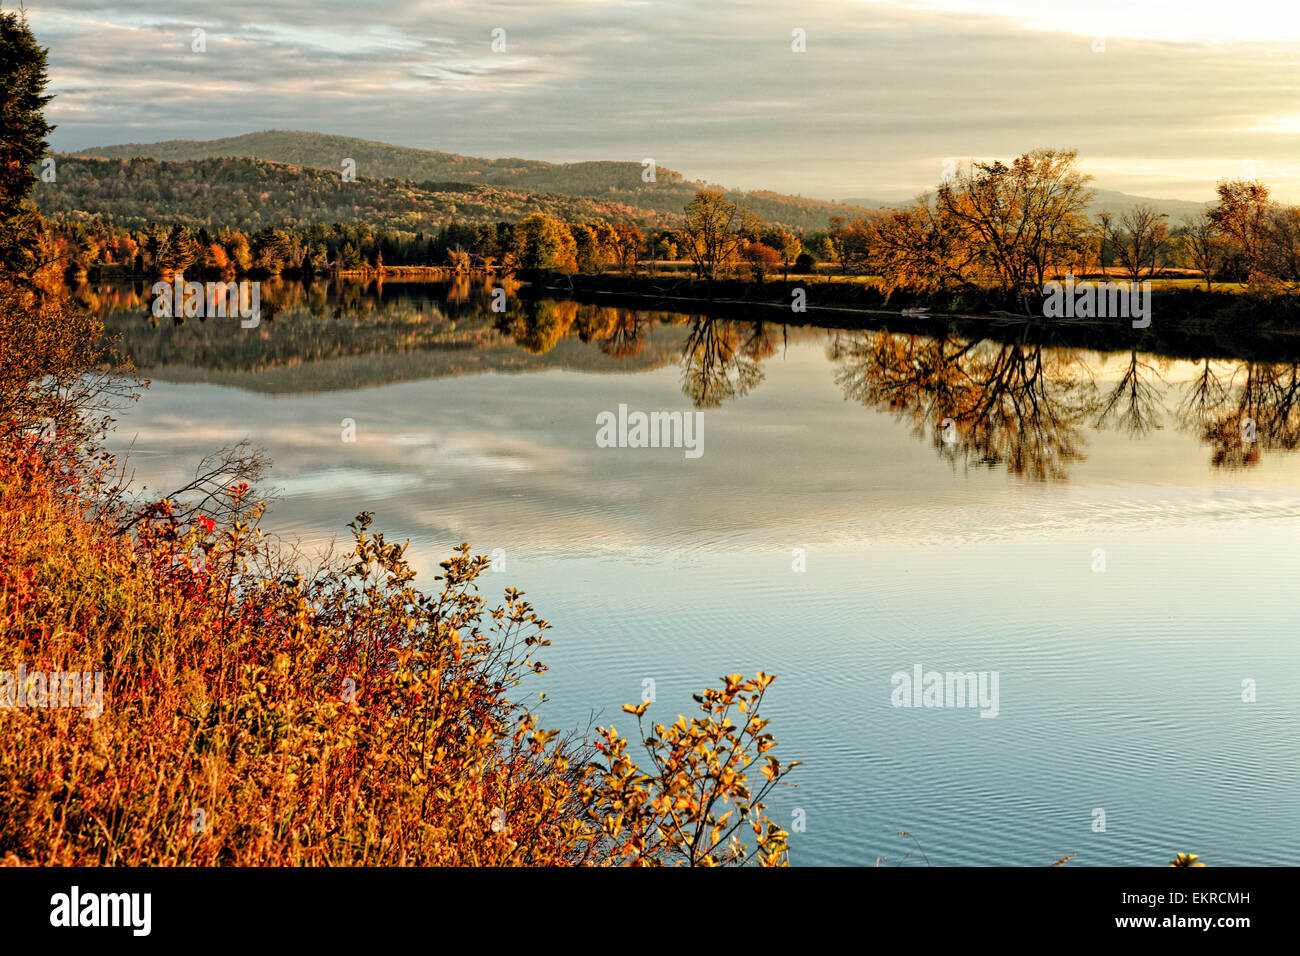 Blick auf einen ruhigen Fluss mit bunten Laub Reflexionen, Moore Reservoir, Connecticut River, New Hampshire Stockfoto